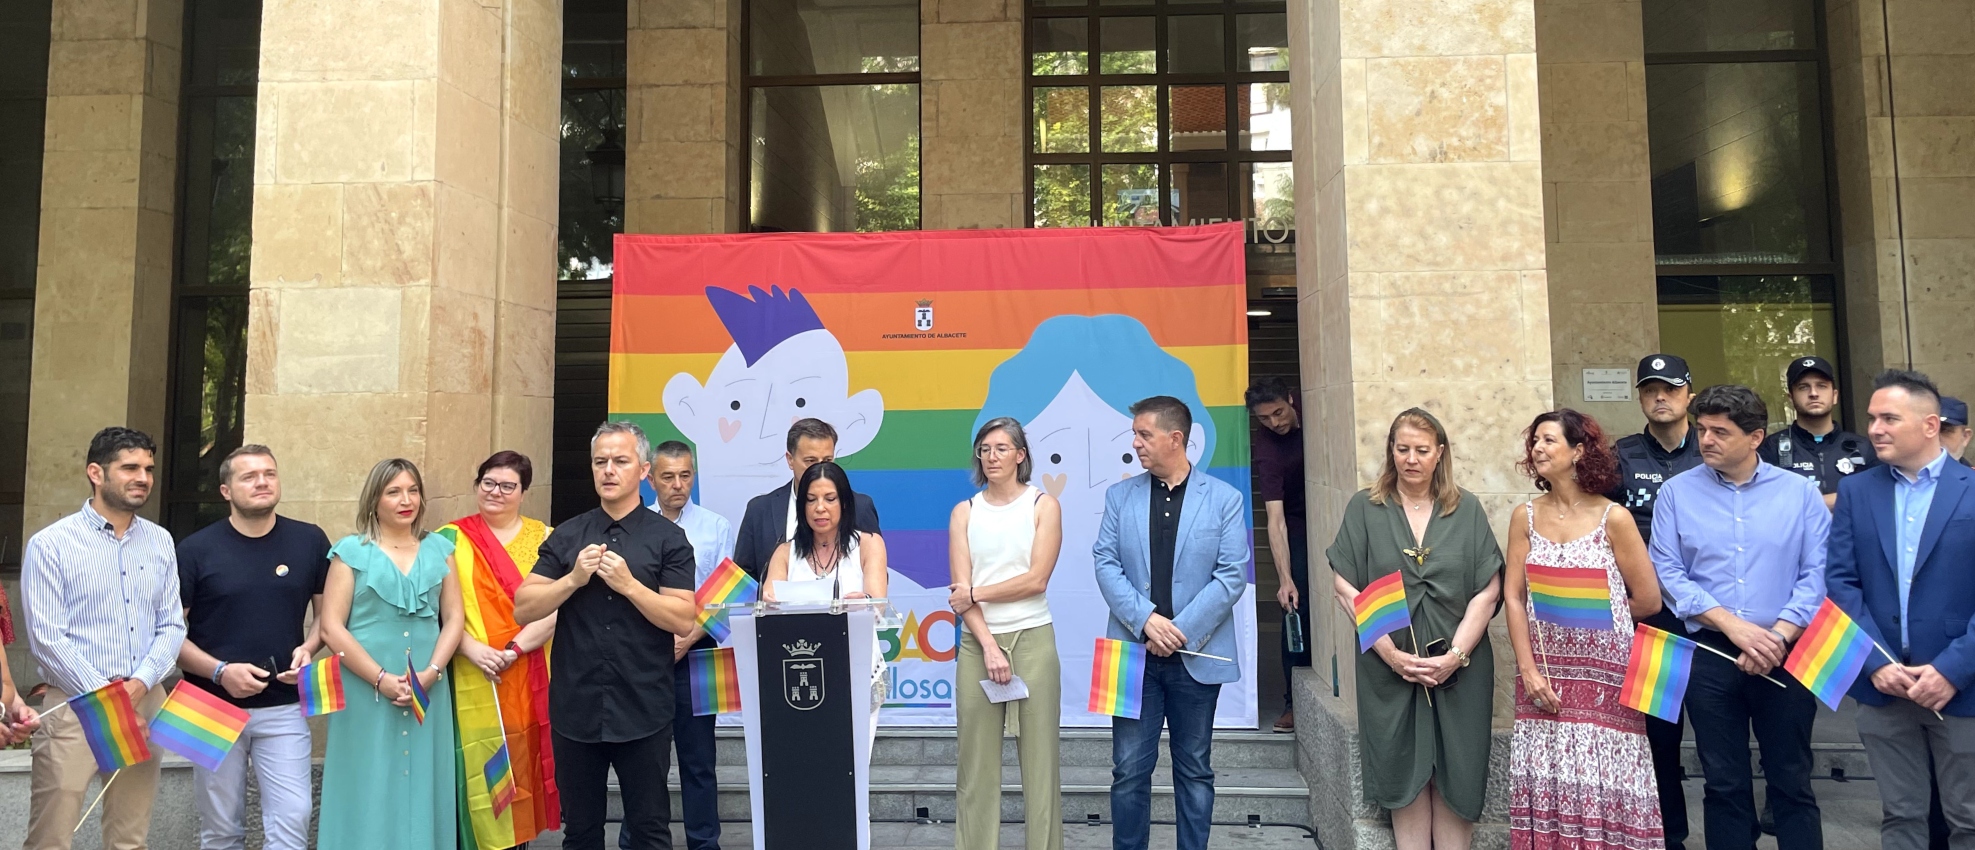 Acto institucional por el Día Internacional del Orgullo en el Ayuntamiento de Albacete.